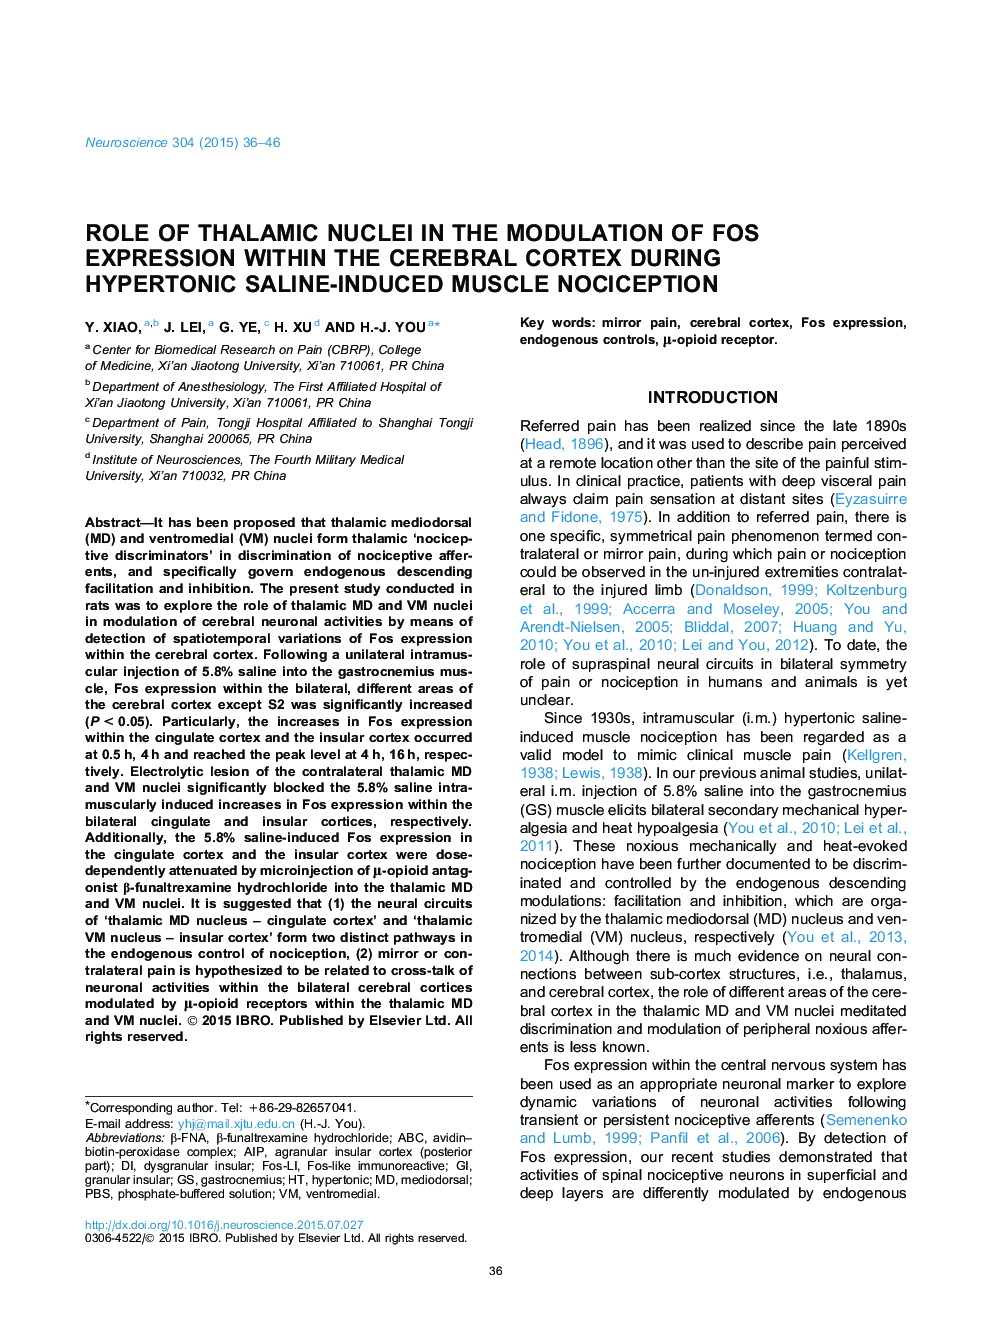 نقش هسته تالاموس در مدولاسیون بیان فاس را در قشر مغز در طول هیپرتونیک درد عضلانی ناشی از شور 